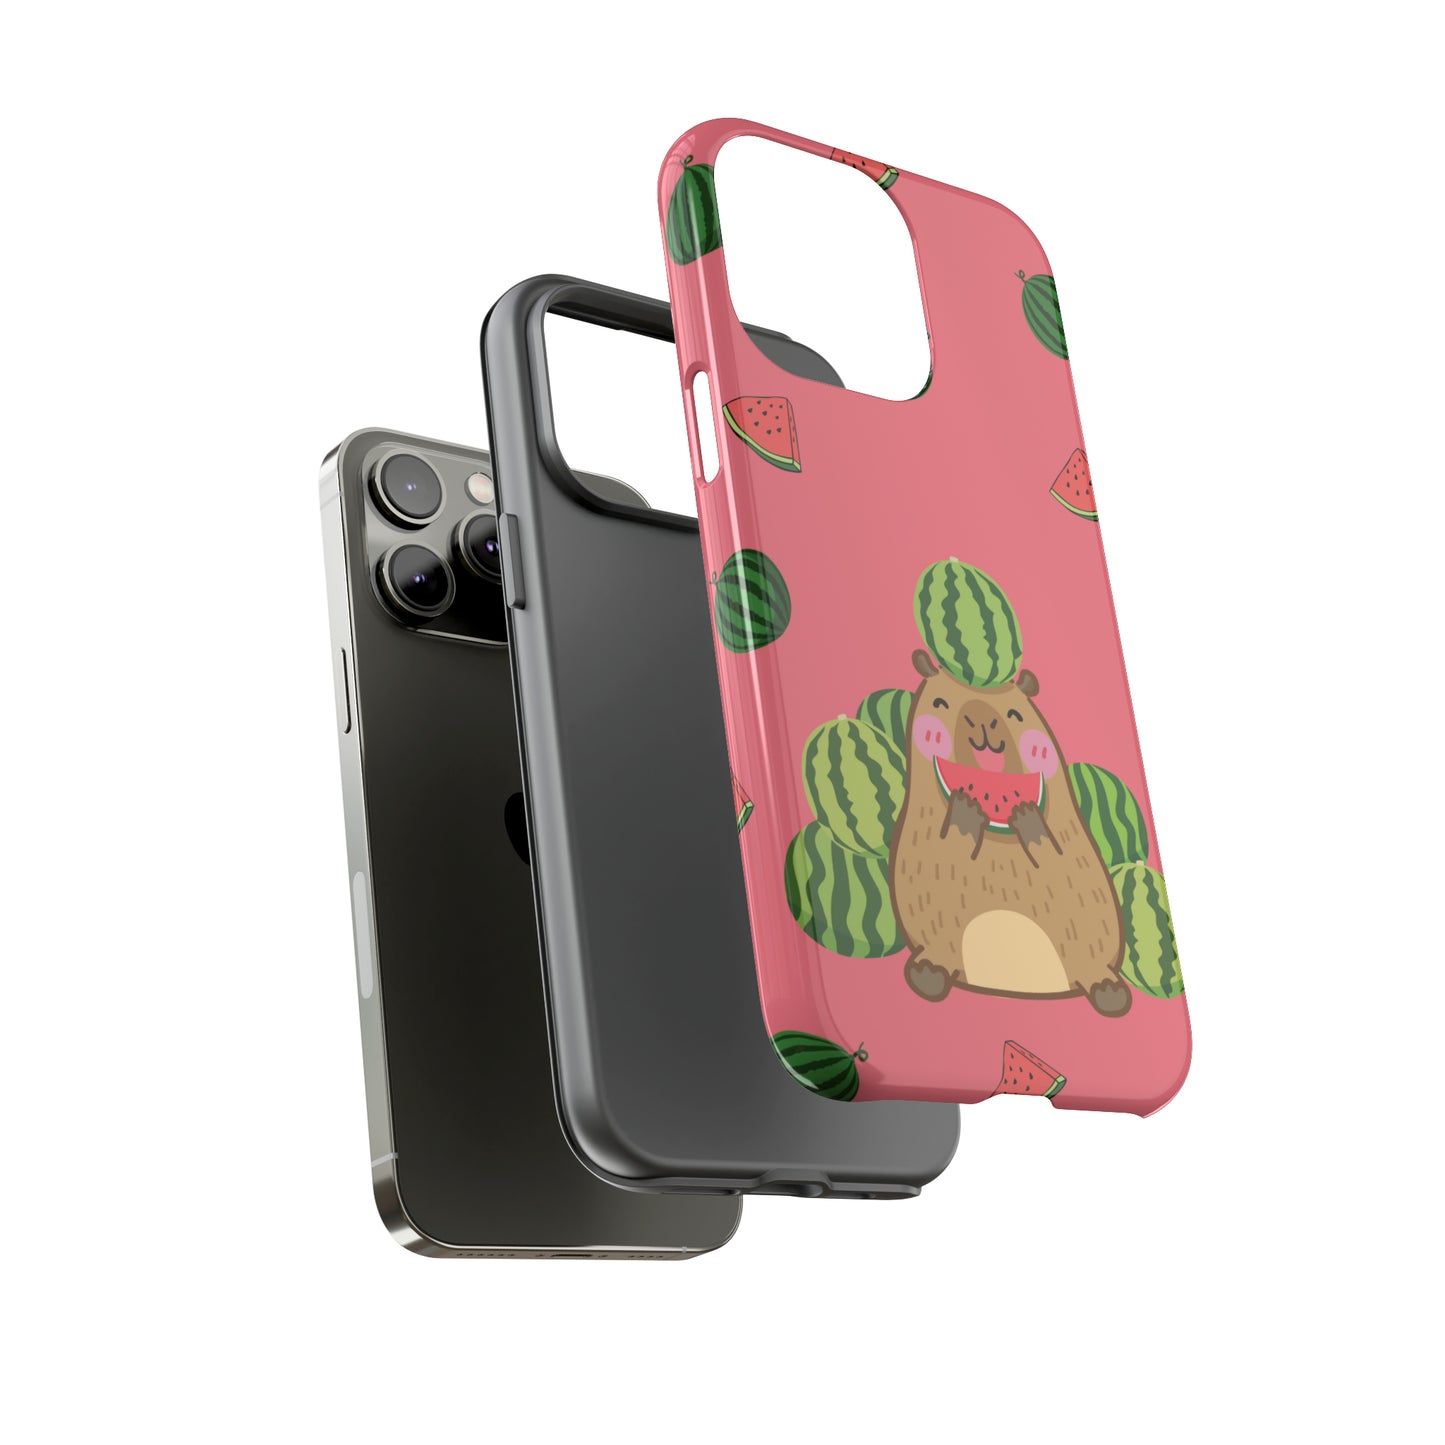 Capybara Watermelon Tough Phone Cases